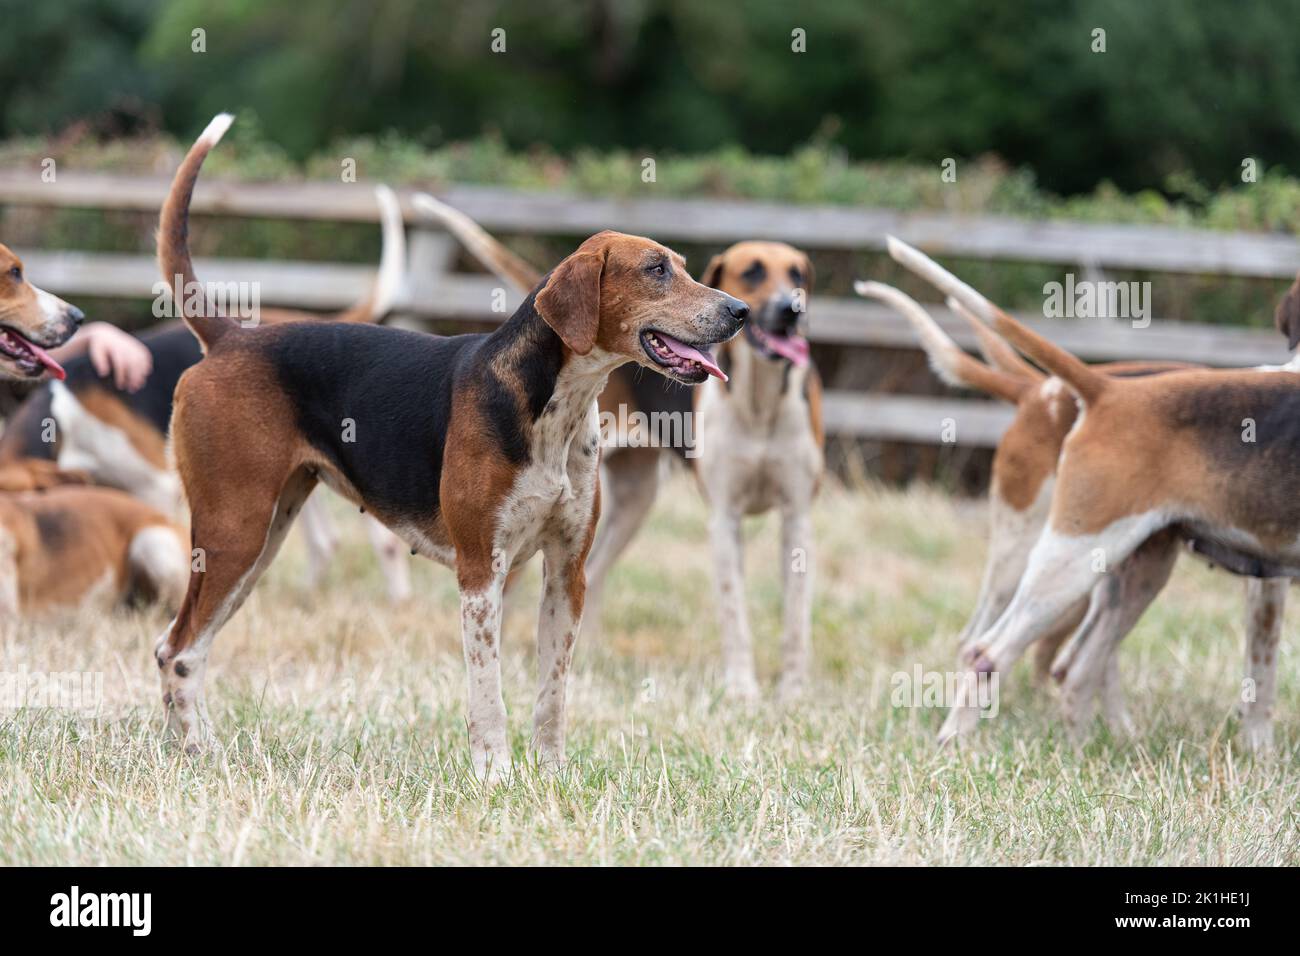 Fox hound Stock Photo